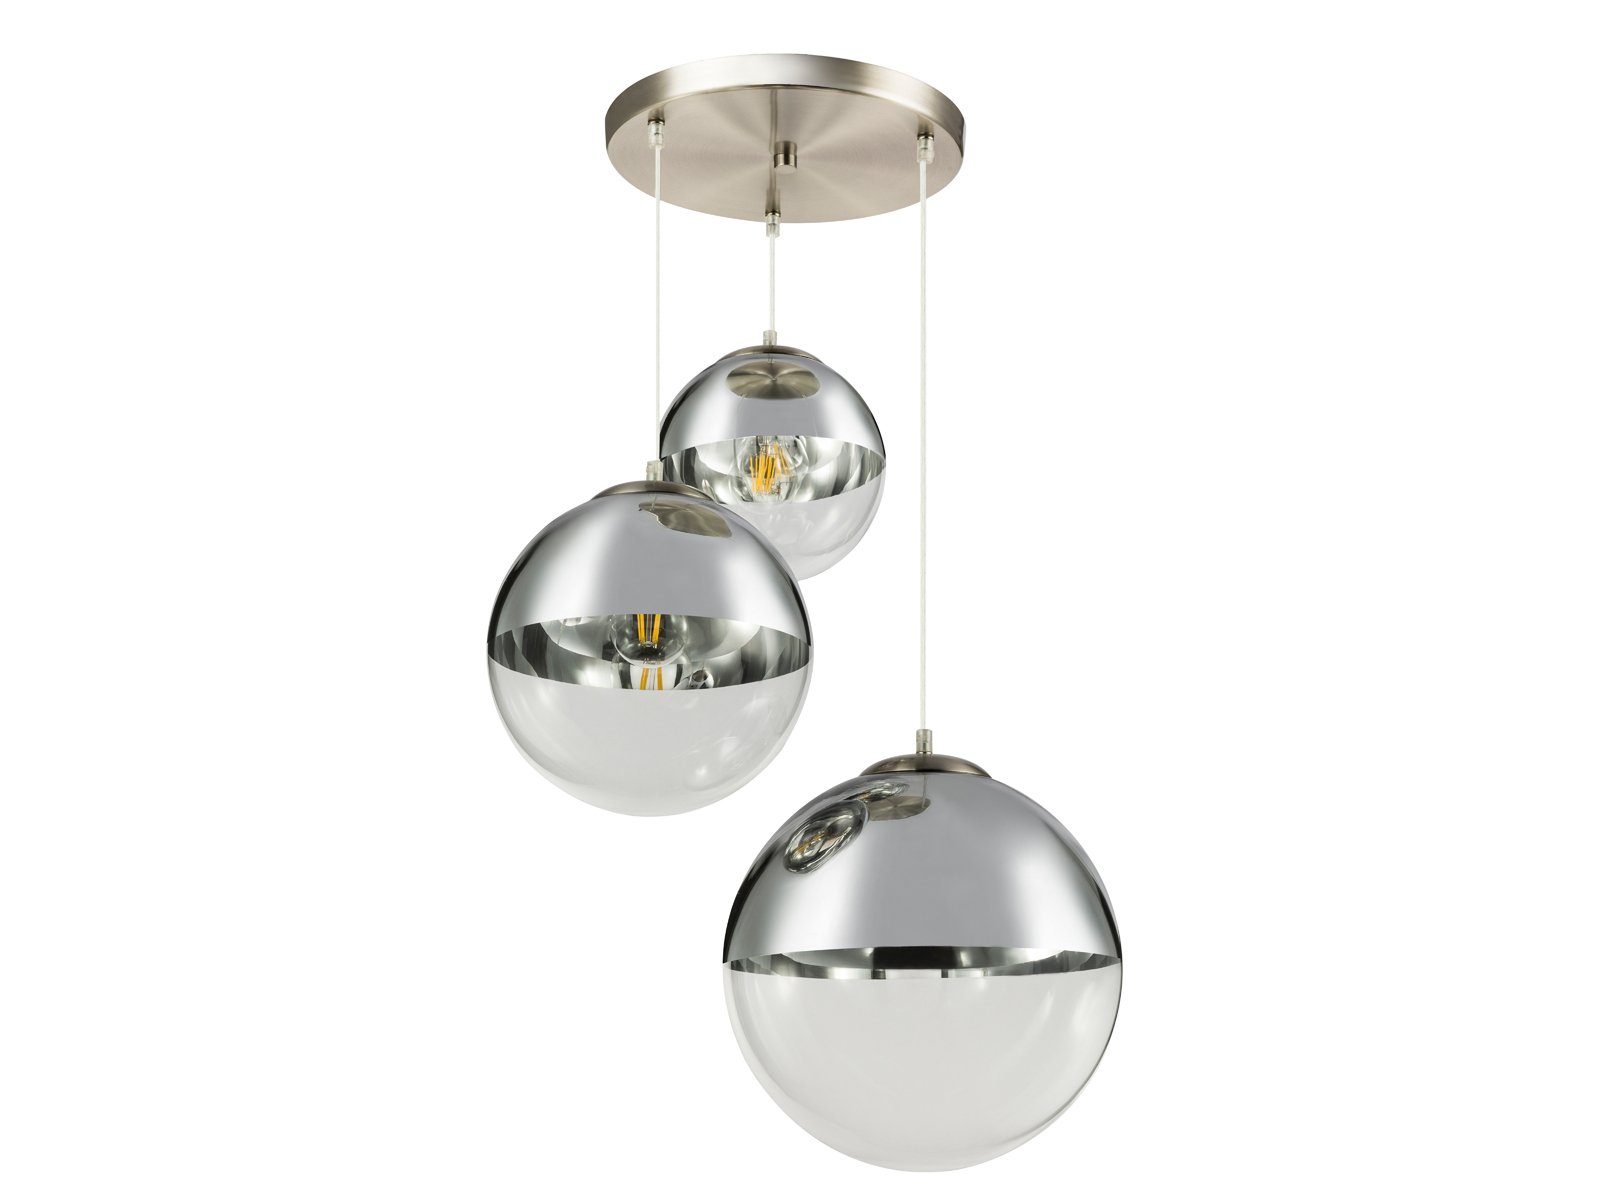 Esstisch LED hängend Cluster für ausgefallene Ø51cm wechselbar, warmweiß, LED Treppenhaus Silber Glas-kugel meineWunschleuchte Pendelleuchte, Chrom